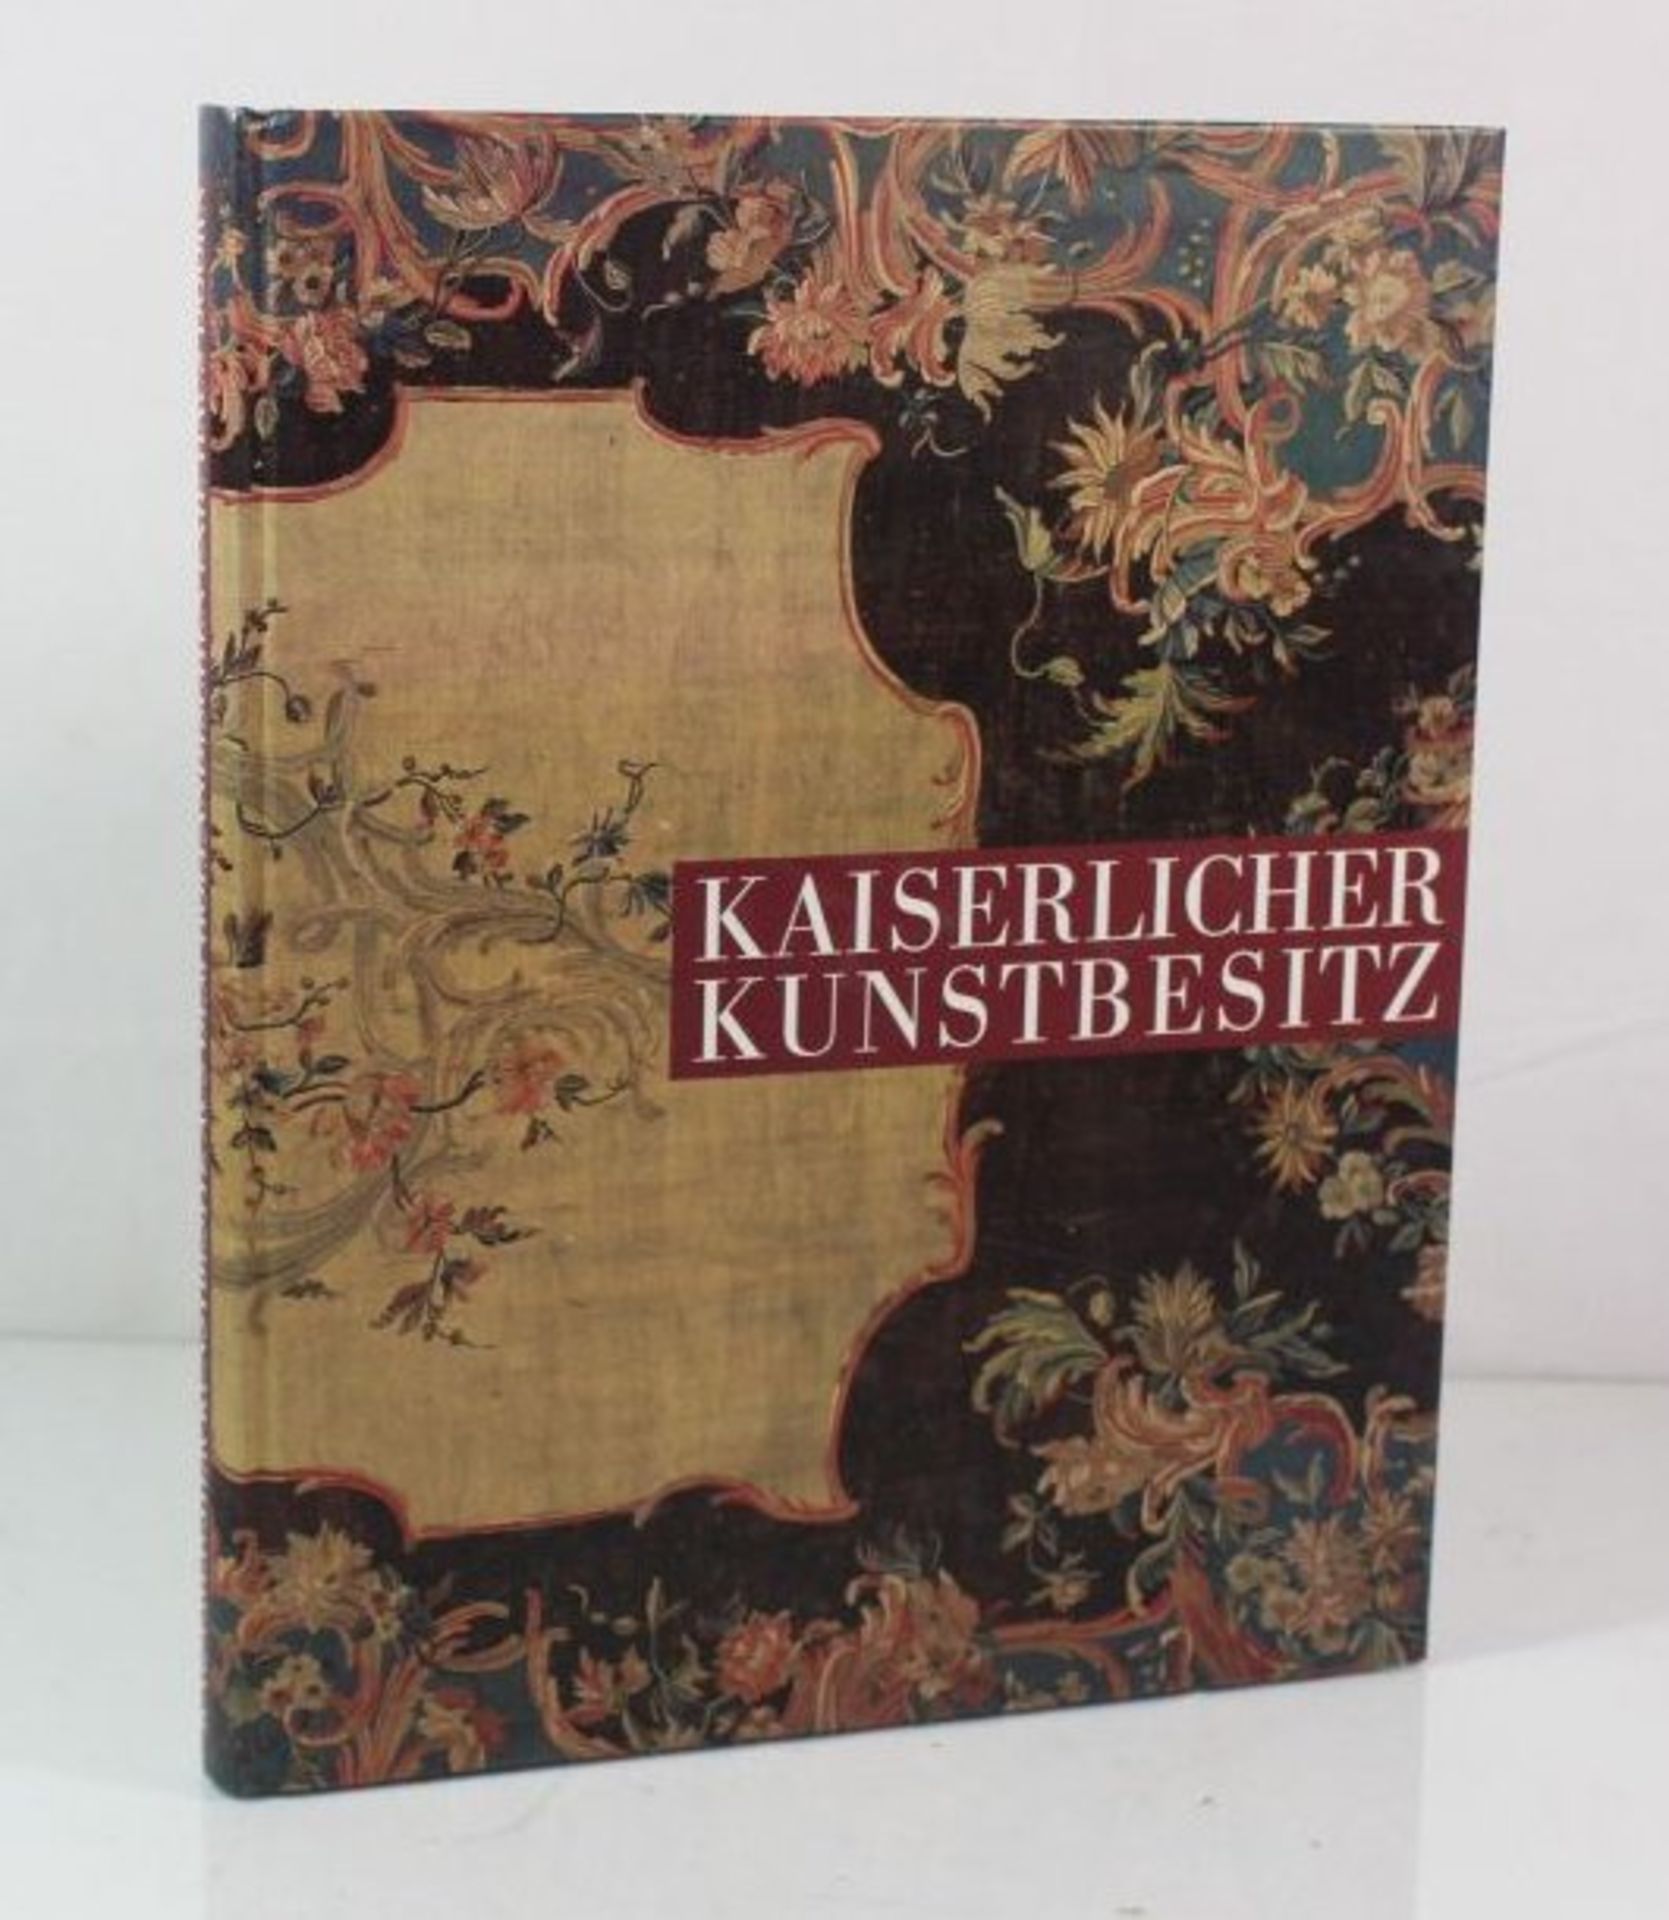 Kaiserlicher Kunstbesitz aus dem holländischen Exil Haus Doorn, Berlin 1991.- - -22.61 % buyer's